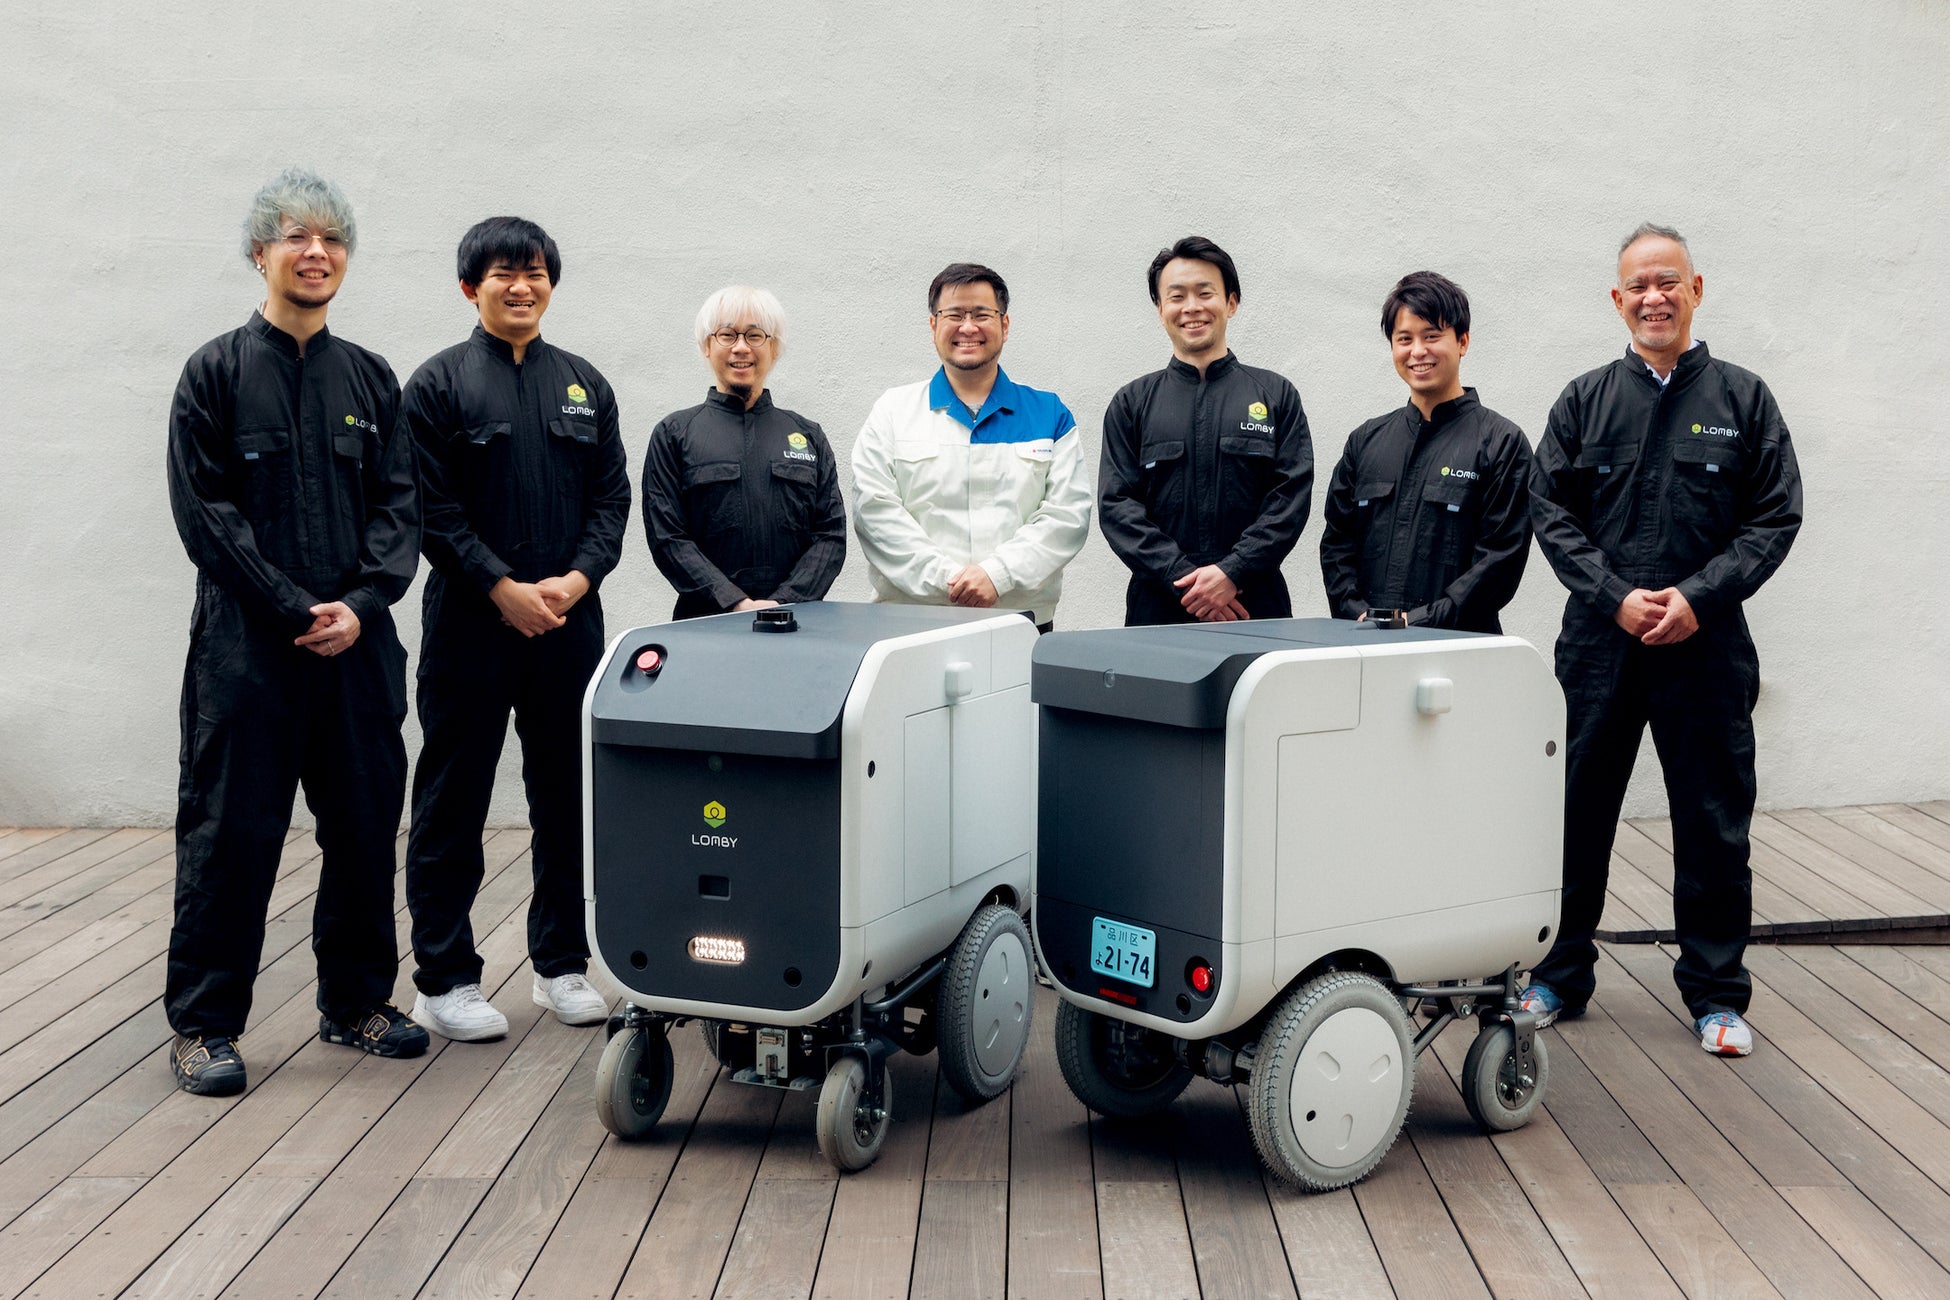 LOMBYとスズキ、公道走行向け自動配送ロボットの共同開発契約を締結